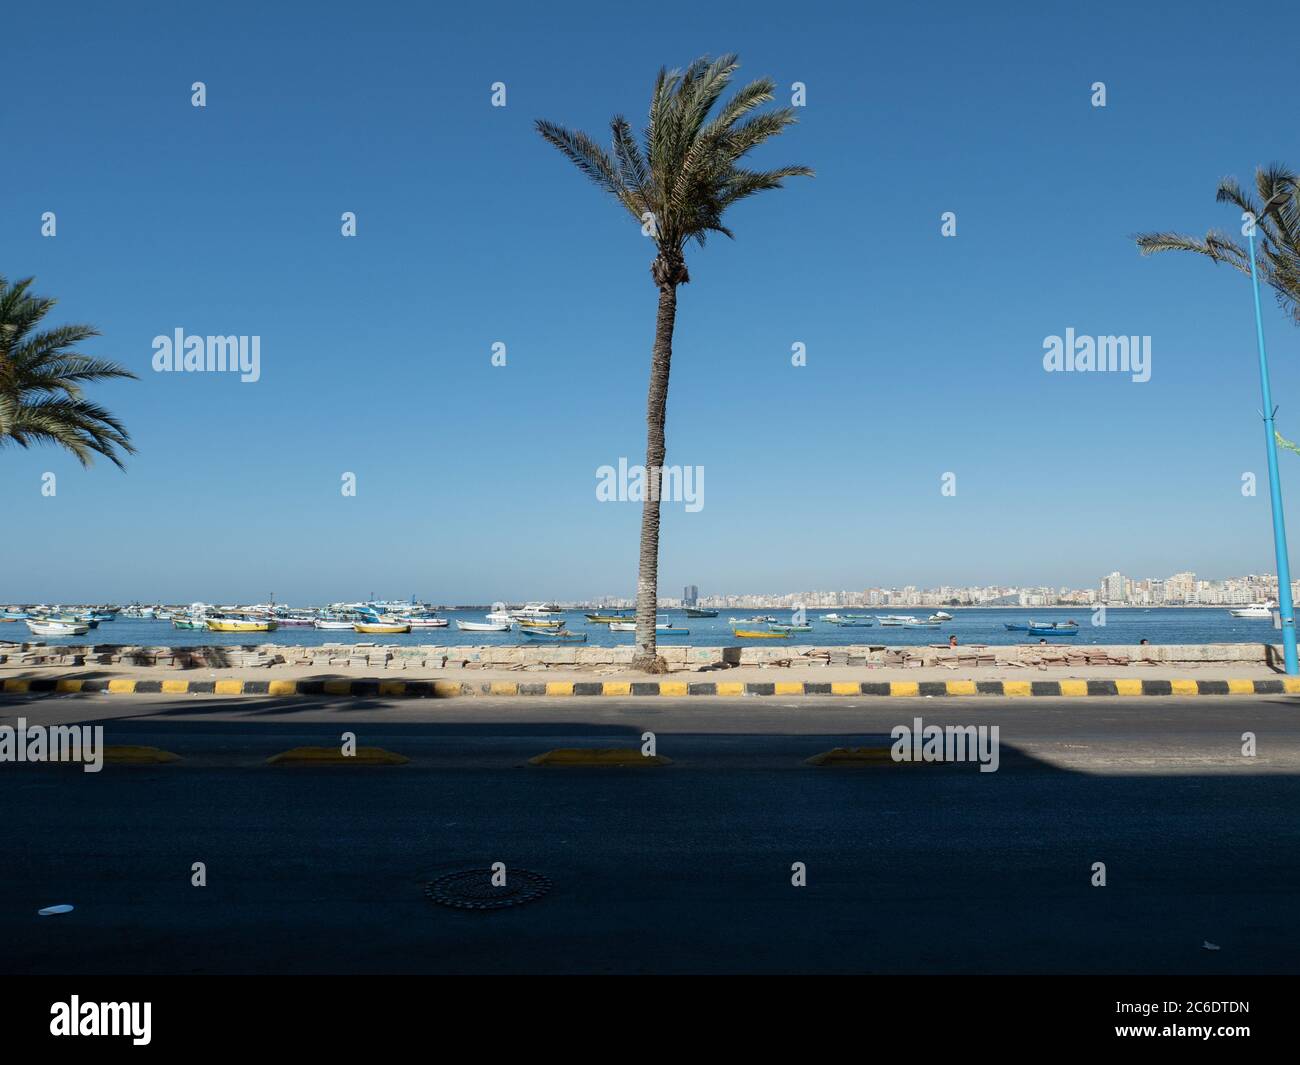 the promenade (corniche) of Alexandria with some boats Stock Photo